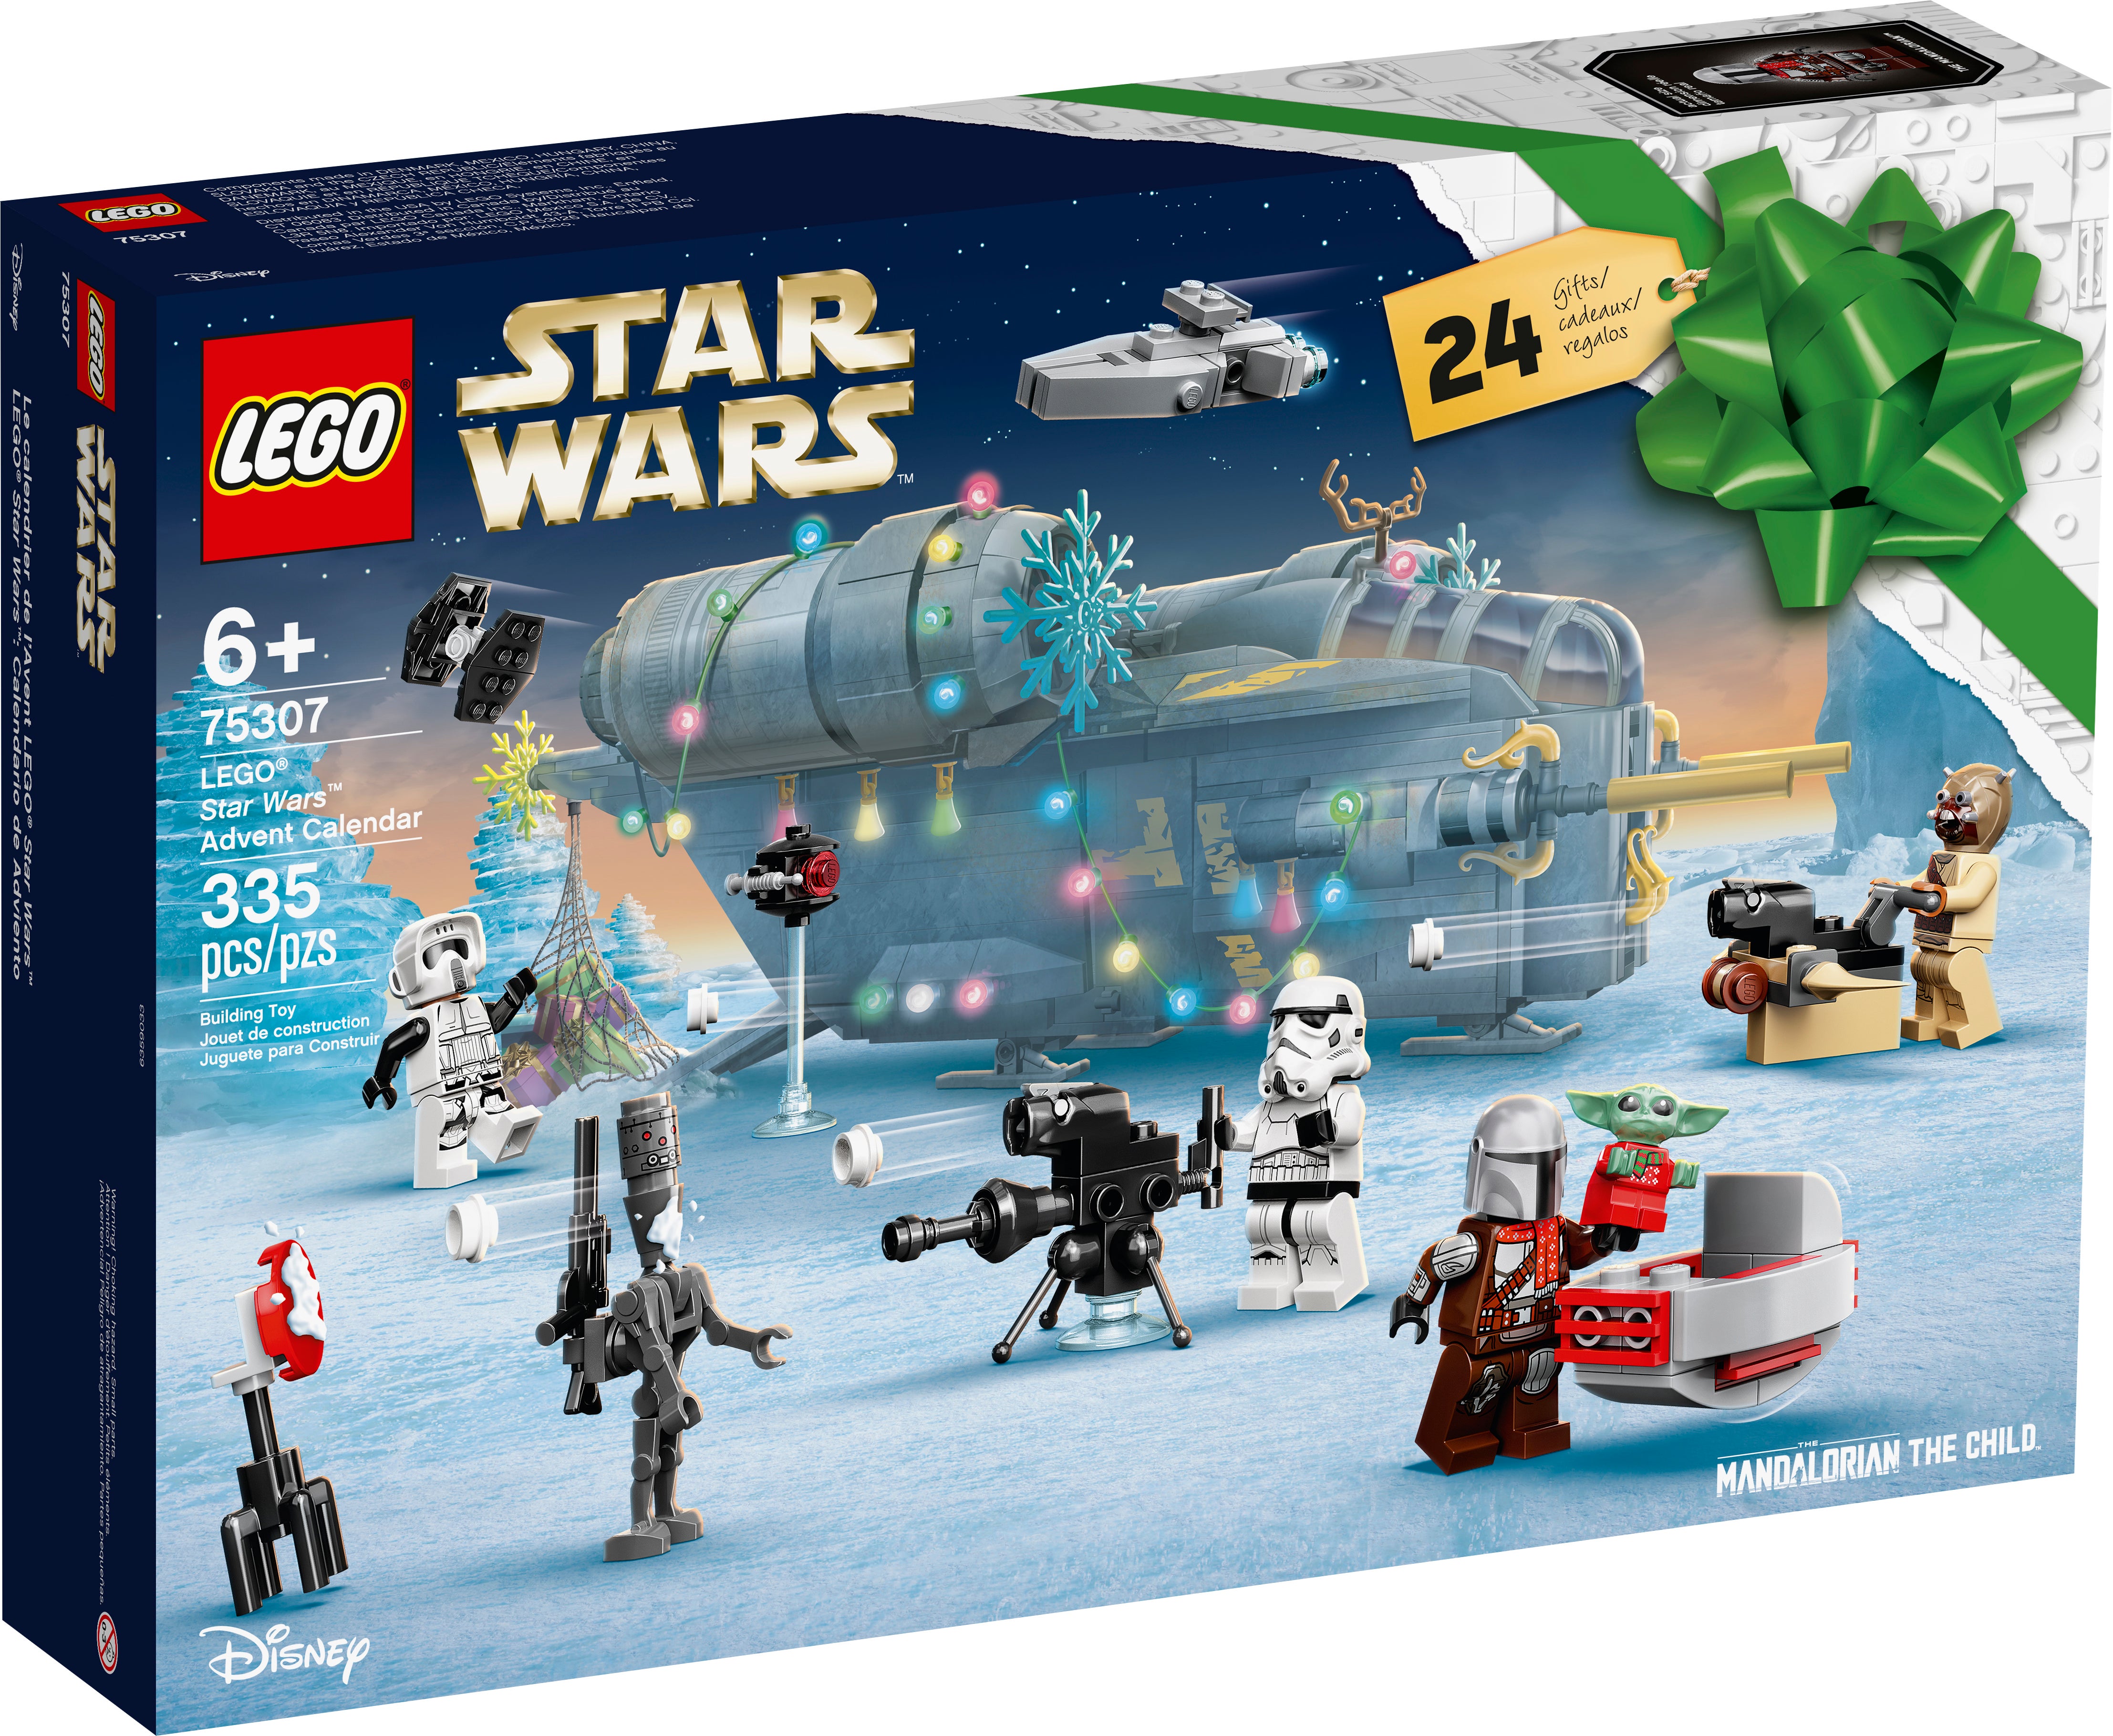 Lego 2021 Star Wars Calendario De Adviento 75307 Totalmente Nuevo Sellado Listo para enviar ✅ ✅